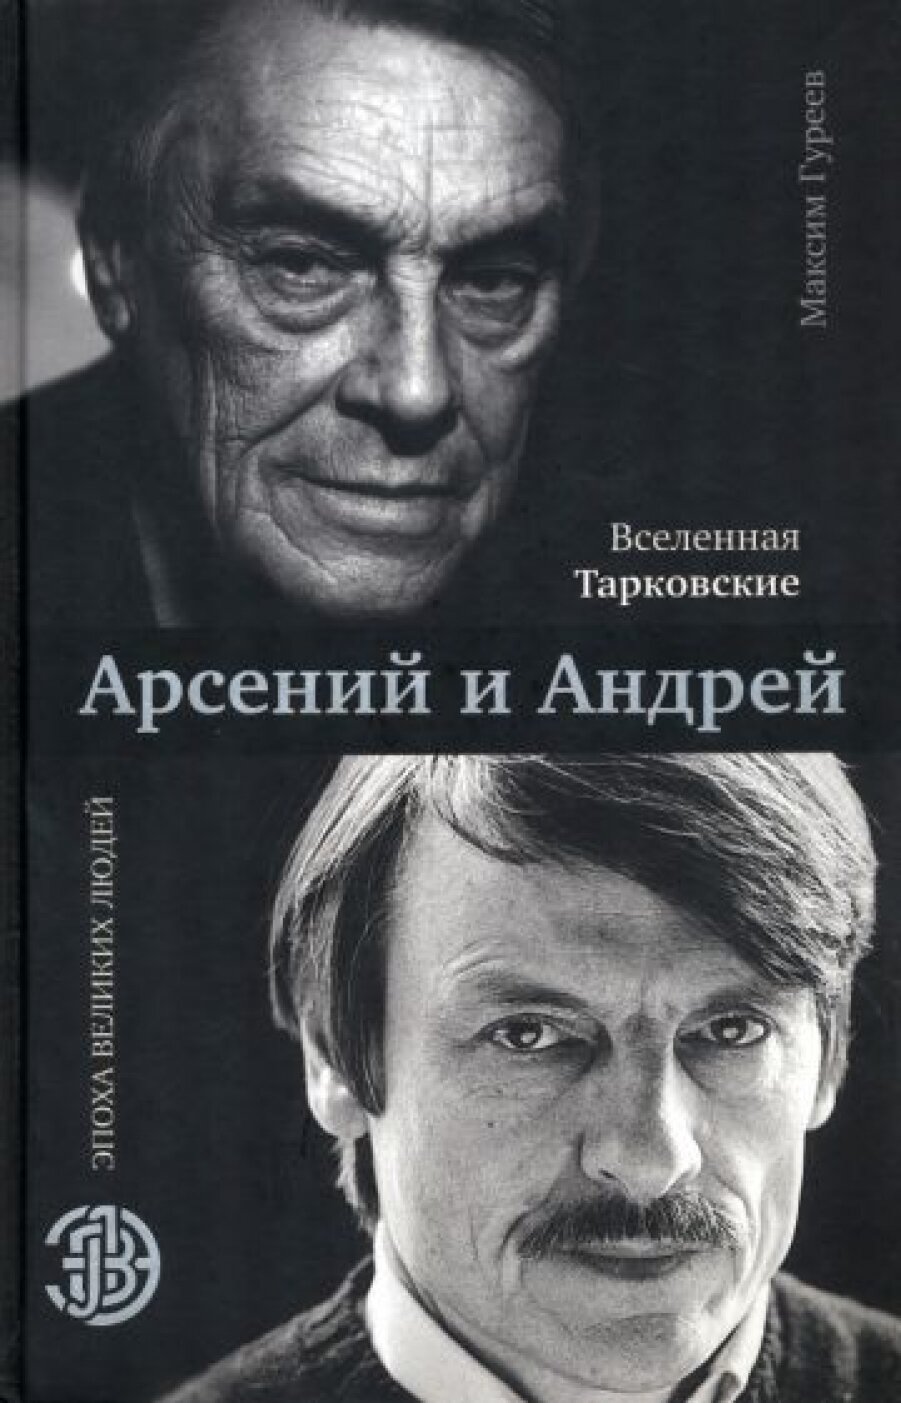 Вселенная Тарковские: Арсений и Андрей - фото №5